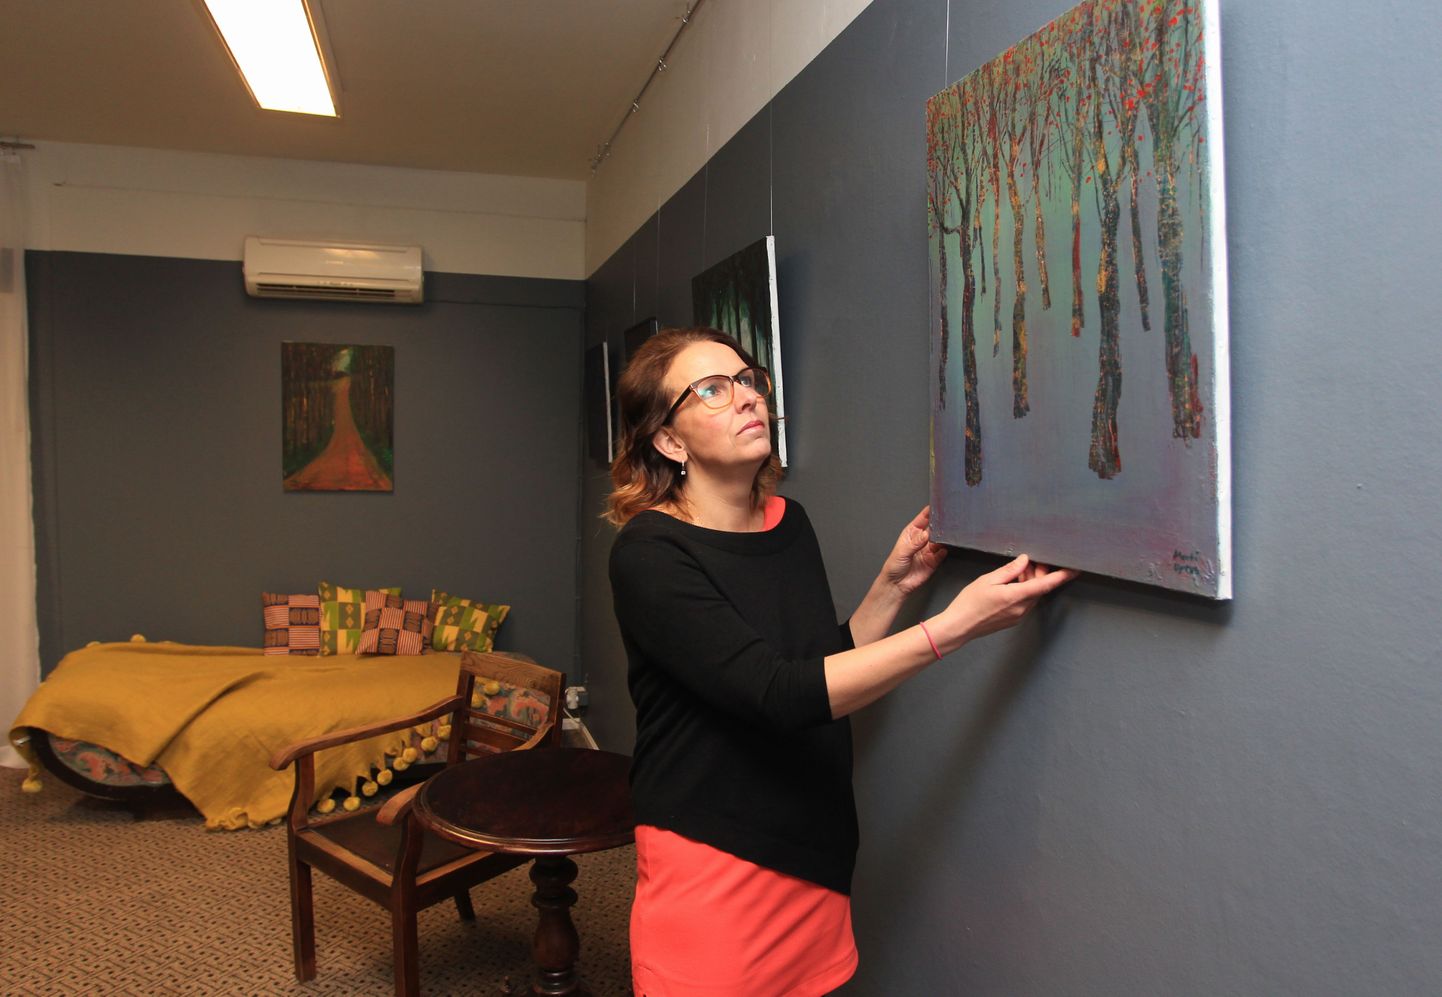 Marita Tani sätib oma ilusalongi Olga & Osvald (Tähe 22) nn elutoas paika pilti, mis kuulub 
kunstnik Mati Upruse maalide väljapanekusse.